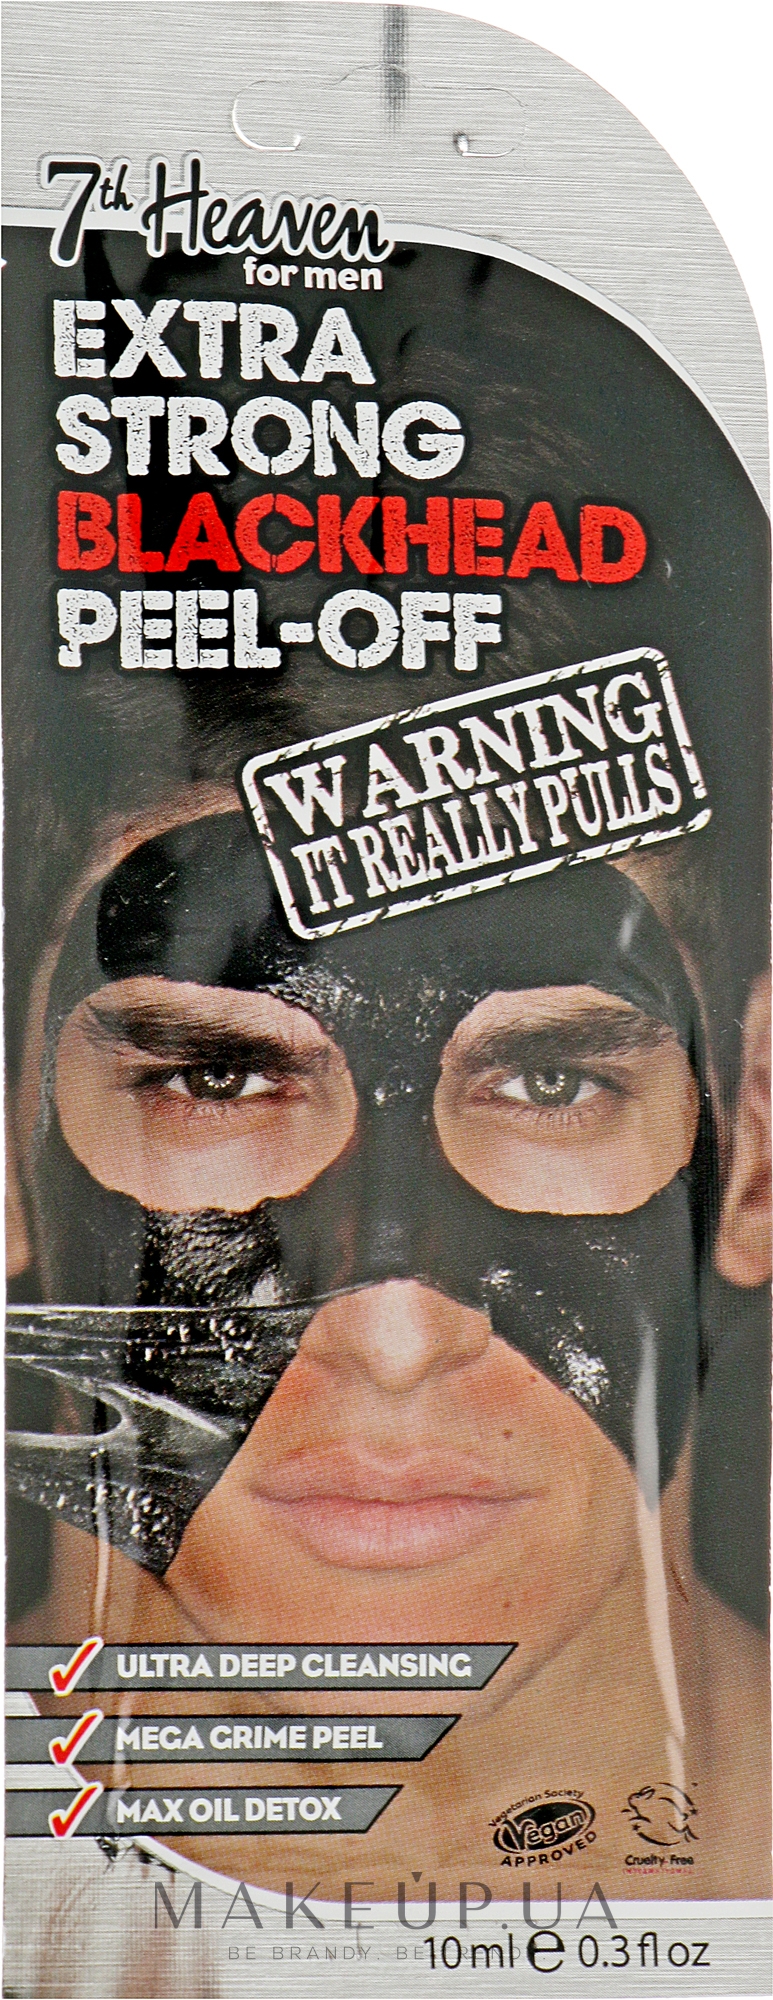 Маска-плівка "Екстраочищення" для чоловіків - 7th Heaven Men's Extra Strong Blackhead Peel-Off Mask — фото 10ml